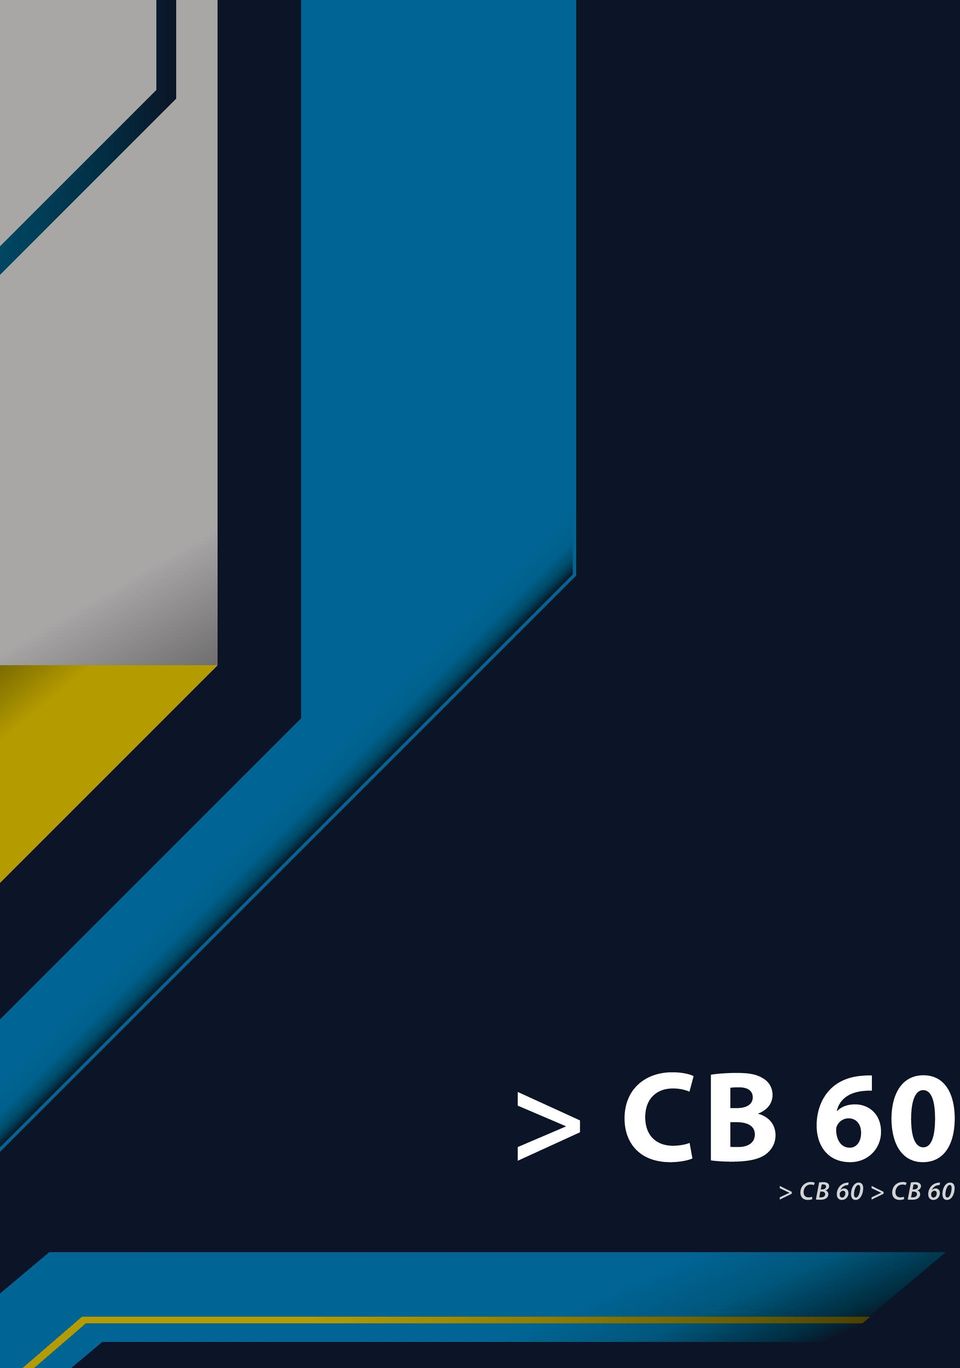 CB 60